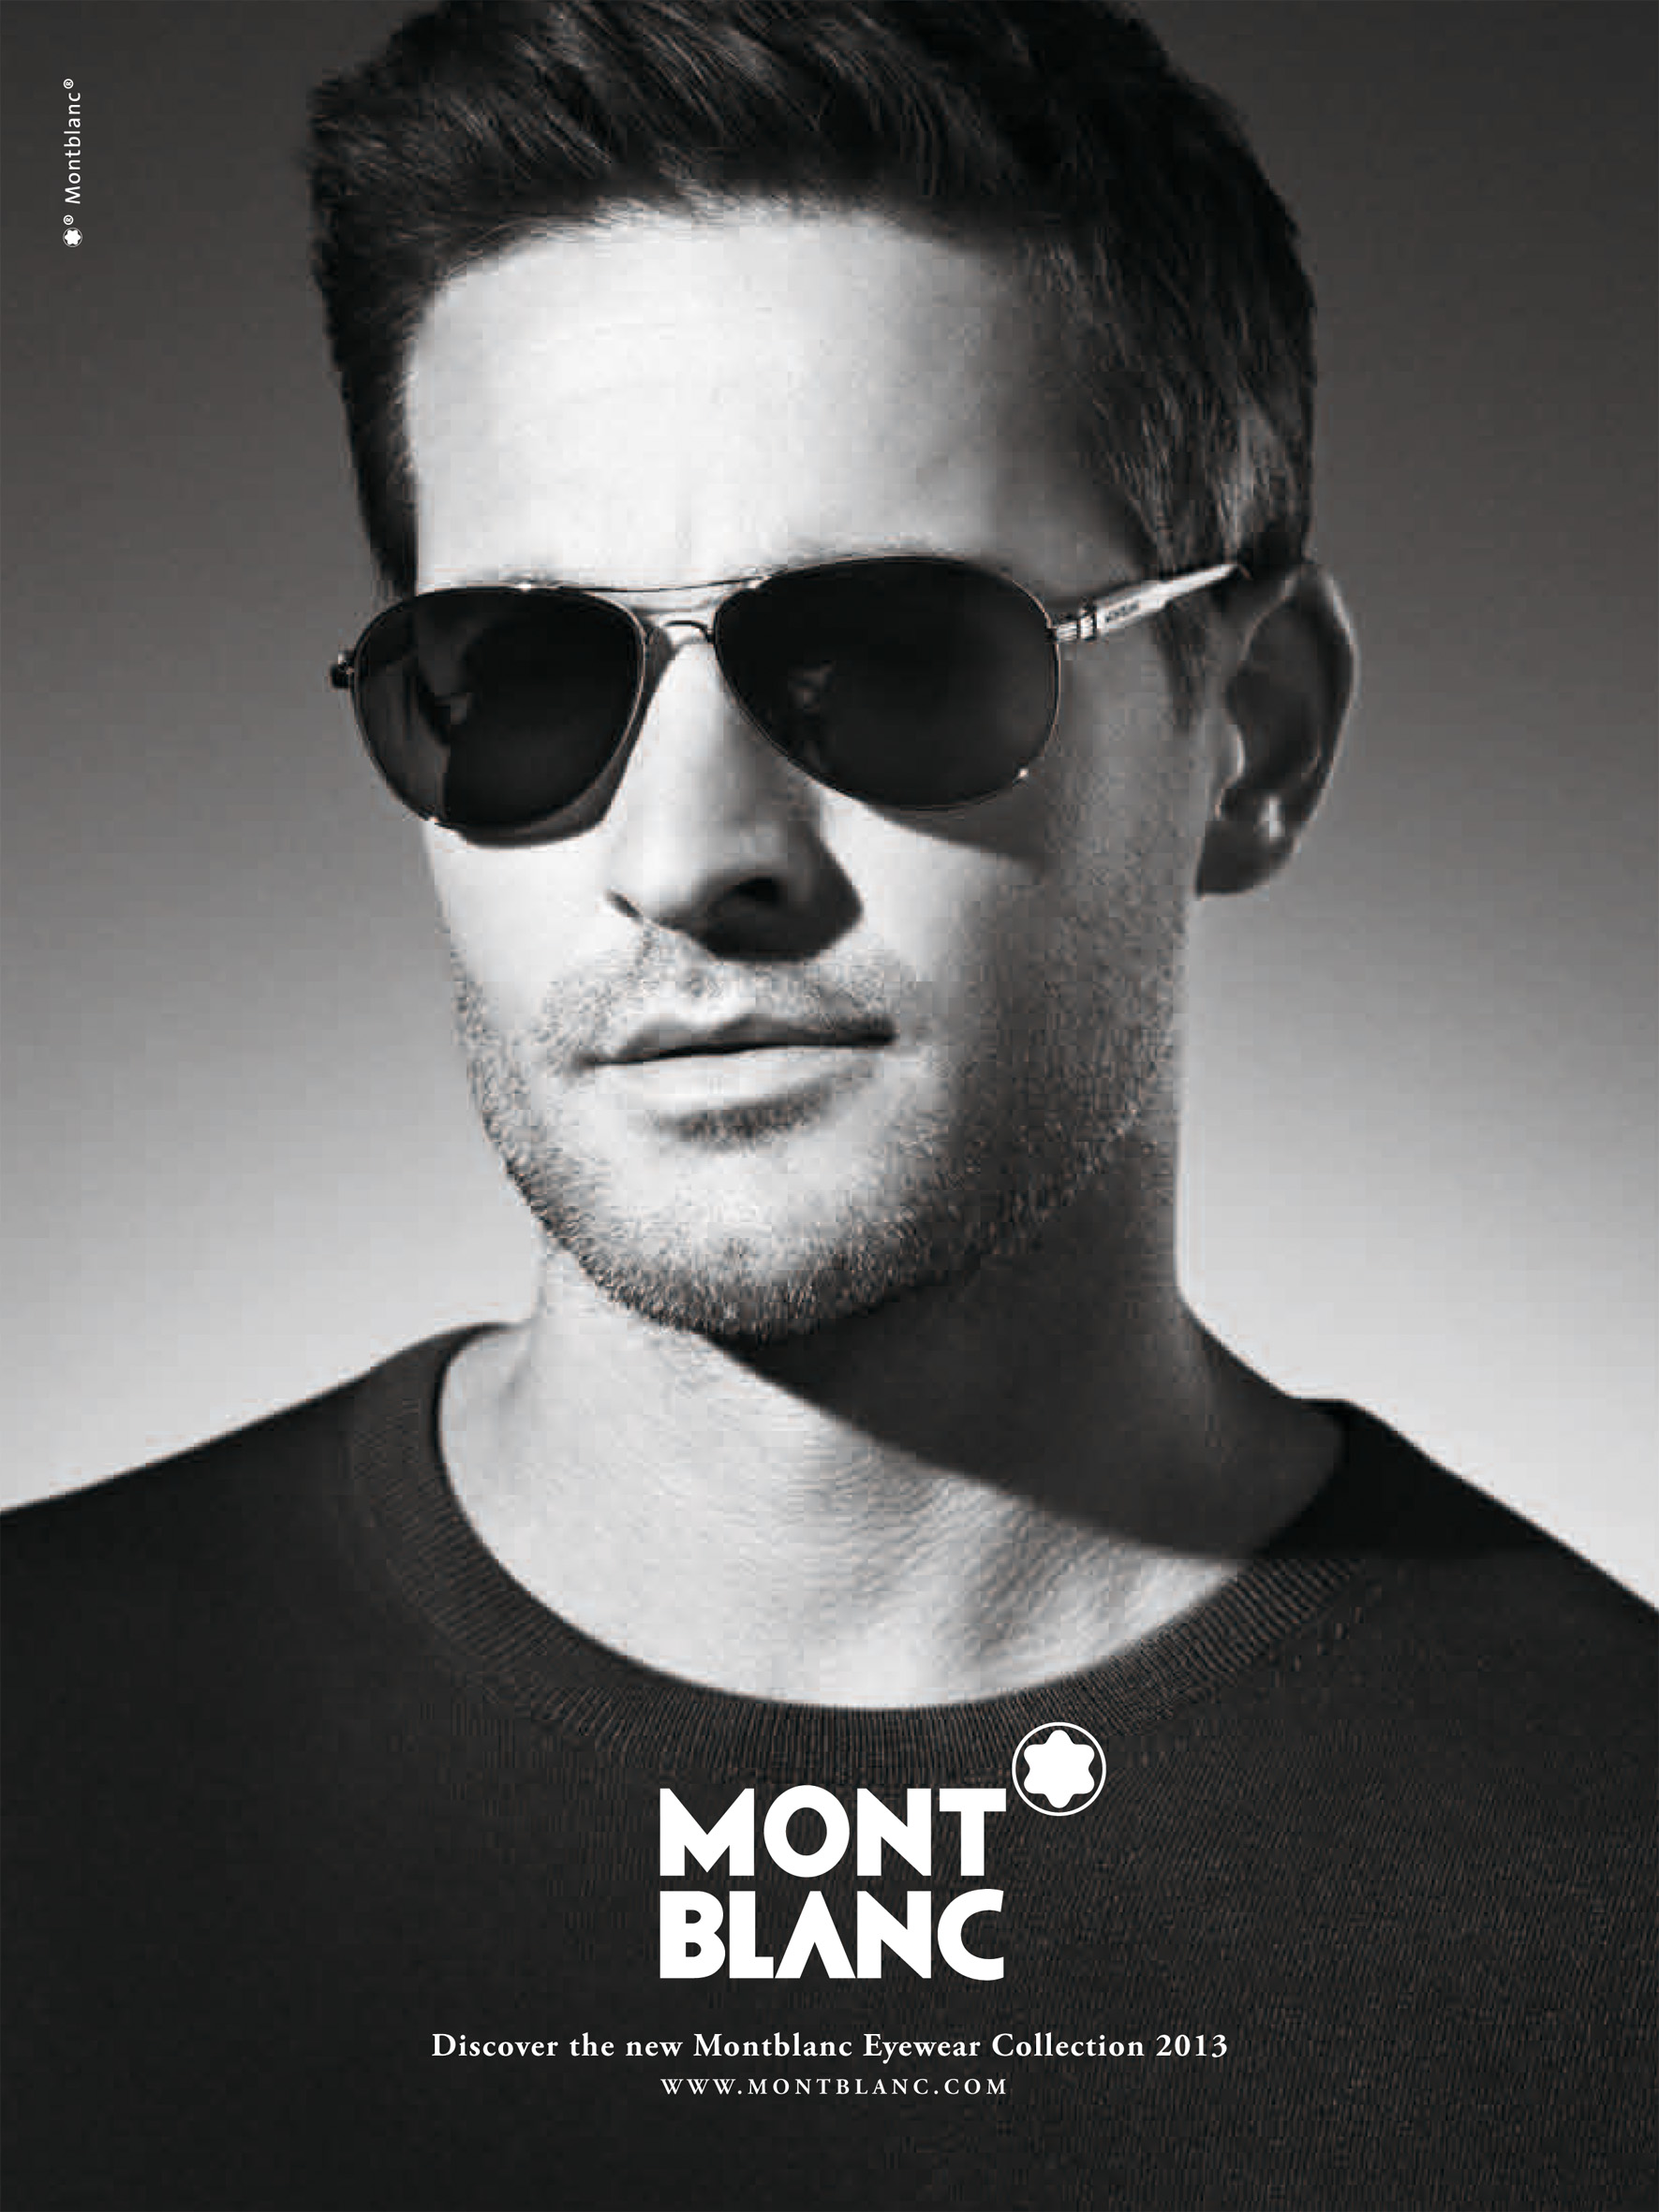 Carlotta Manaigo Photographs Sebastien Moura for Montblanc Spring/Summer 2013 Eyewear Campaign